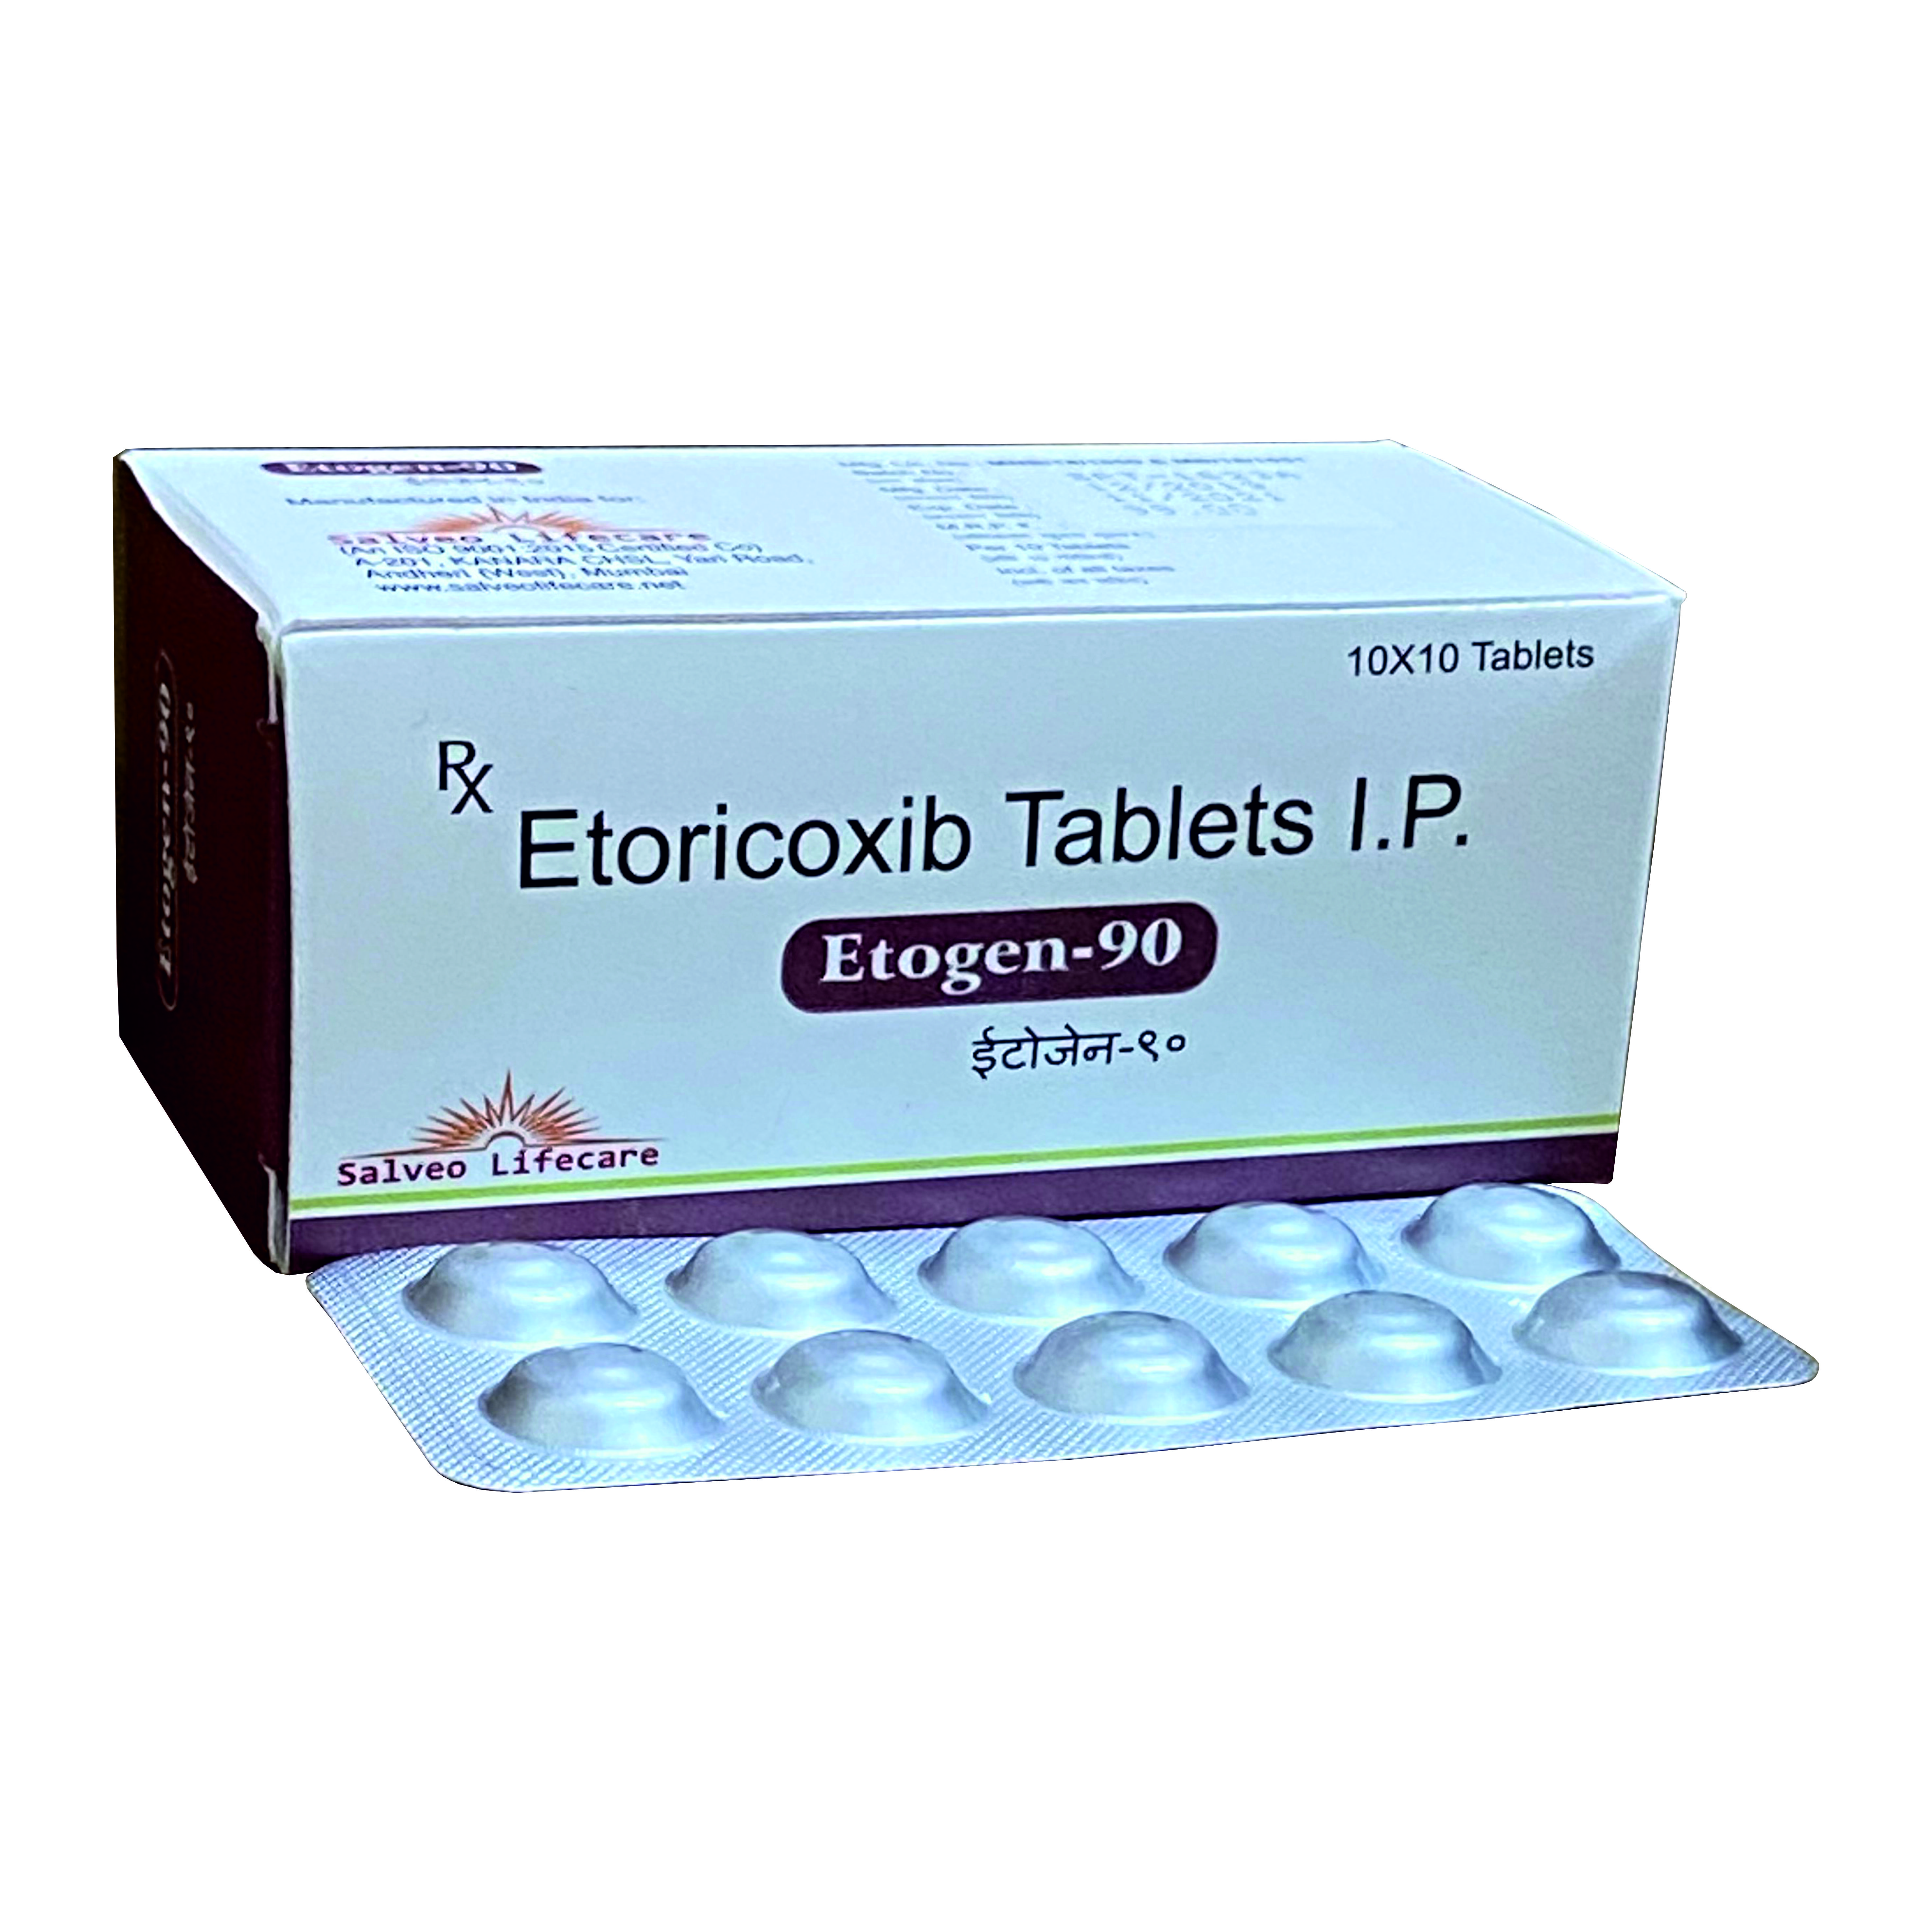 etoricoxib-90 mg